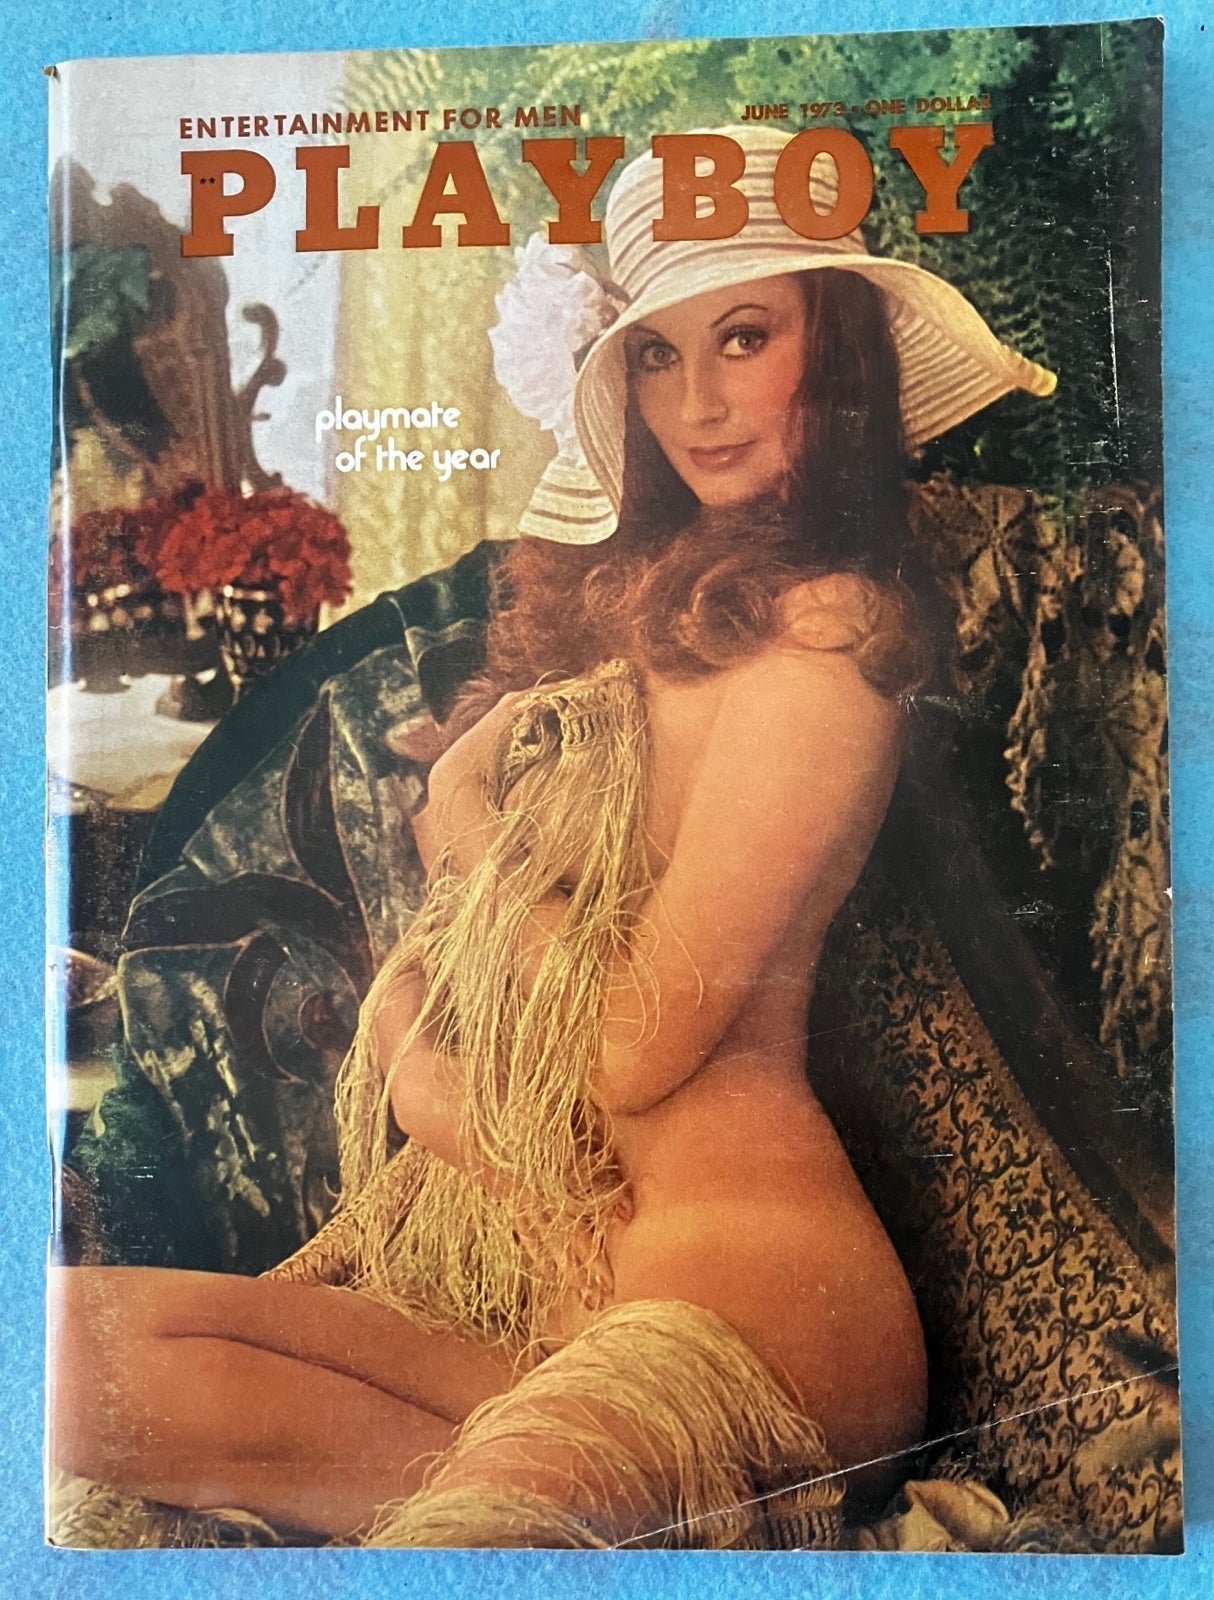 Playboy Magazine June 1973. PB-5. AMUwlulDD